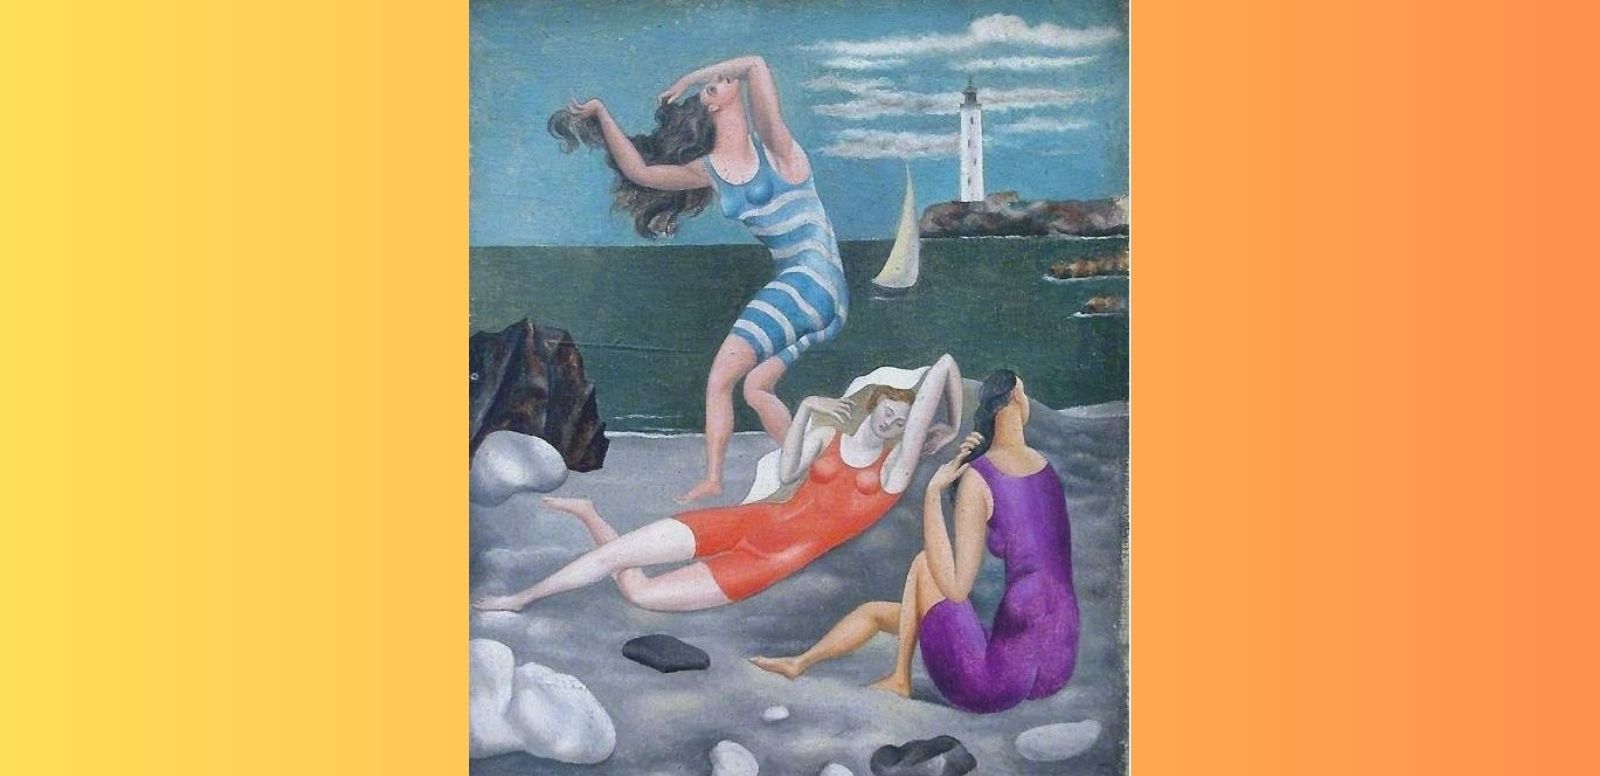 Pablo Picasso. "Las bañistas." 1918